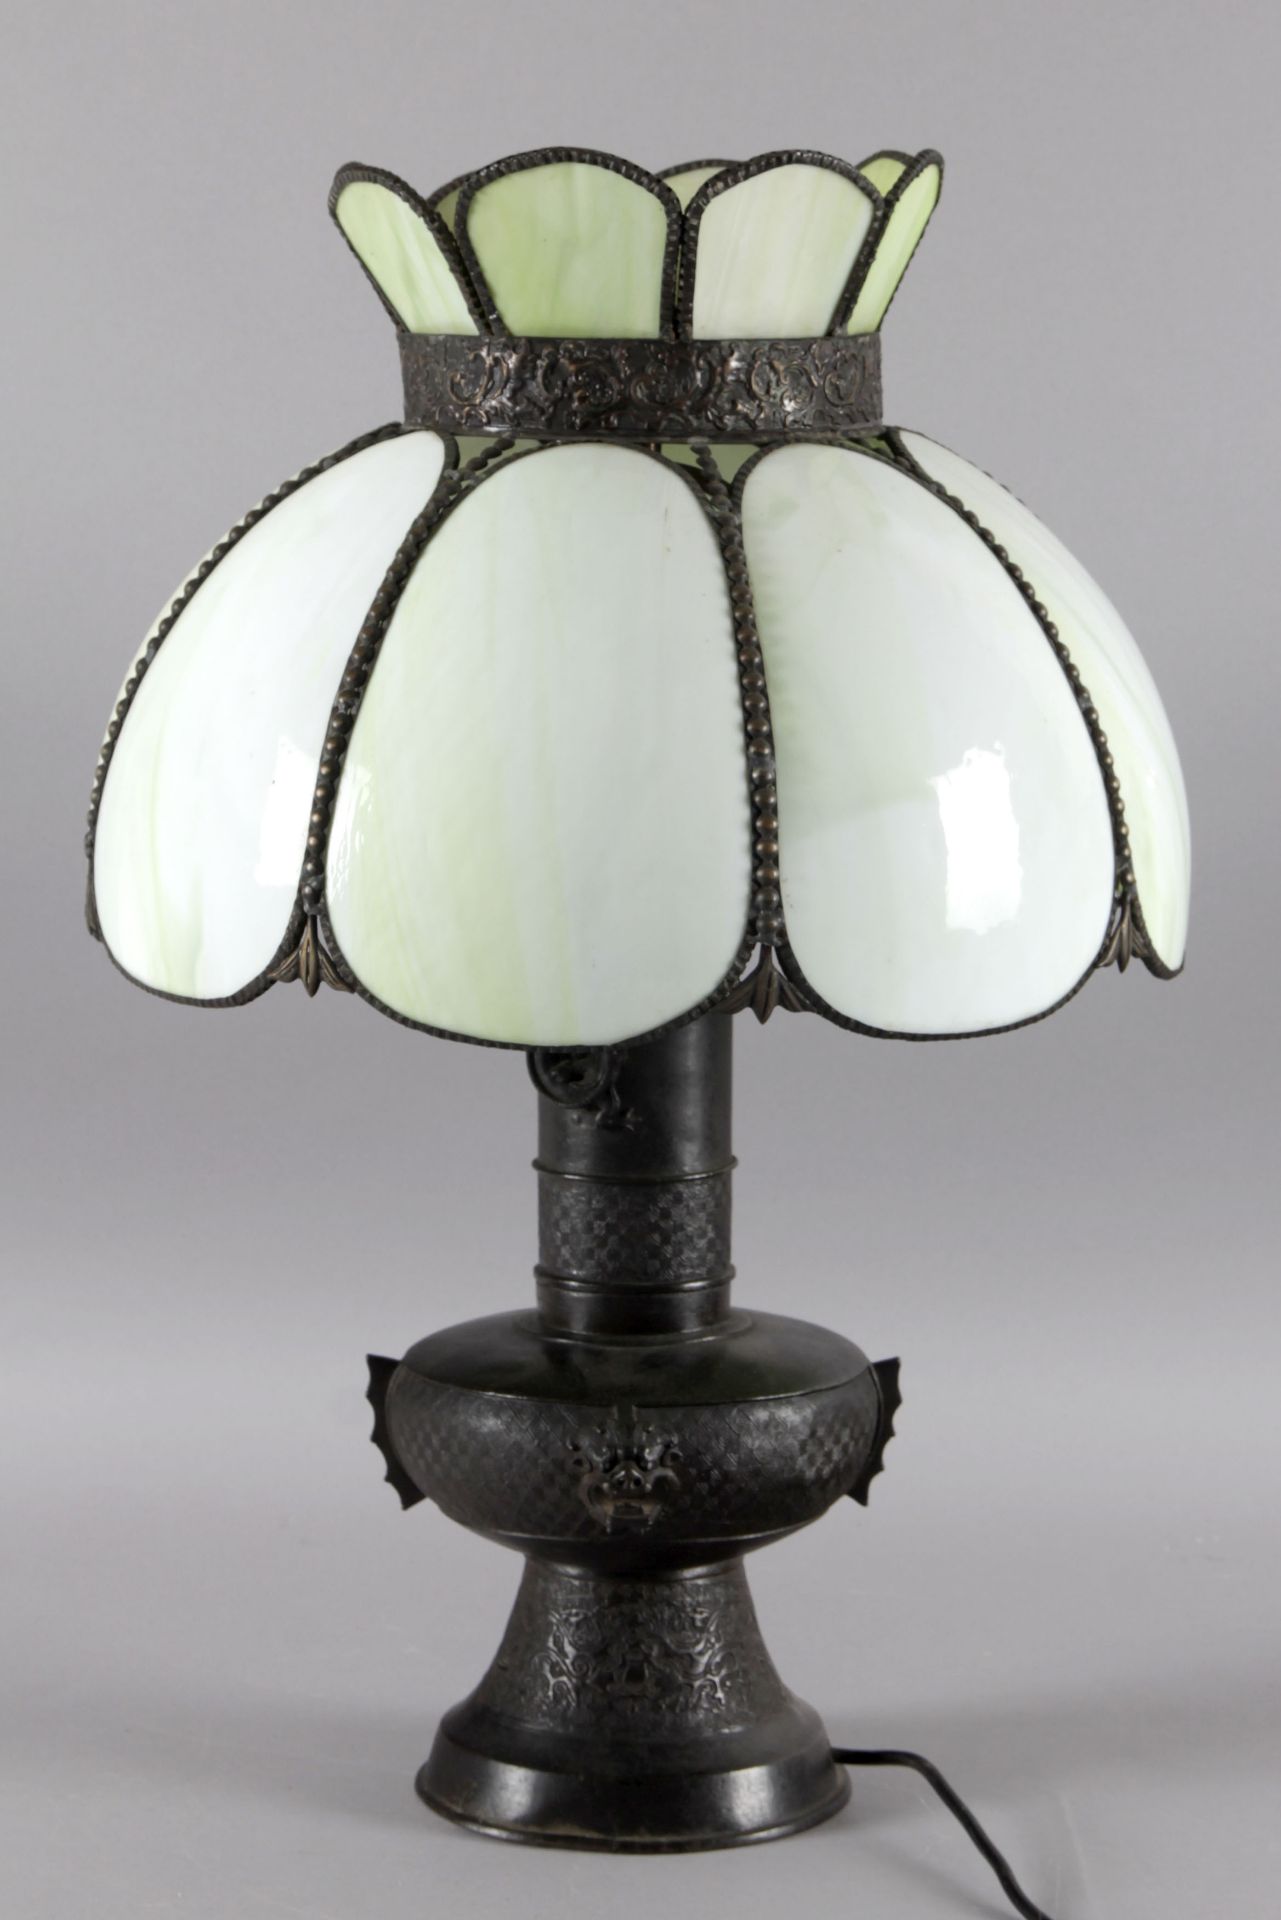 Chinesische Tischlampe mit achtteiligem Schirm aus grünlichem Opalglas und schwarz patiniertem Bronz